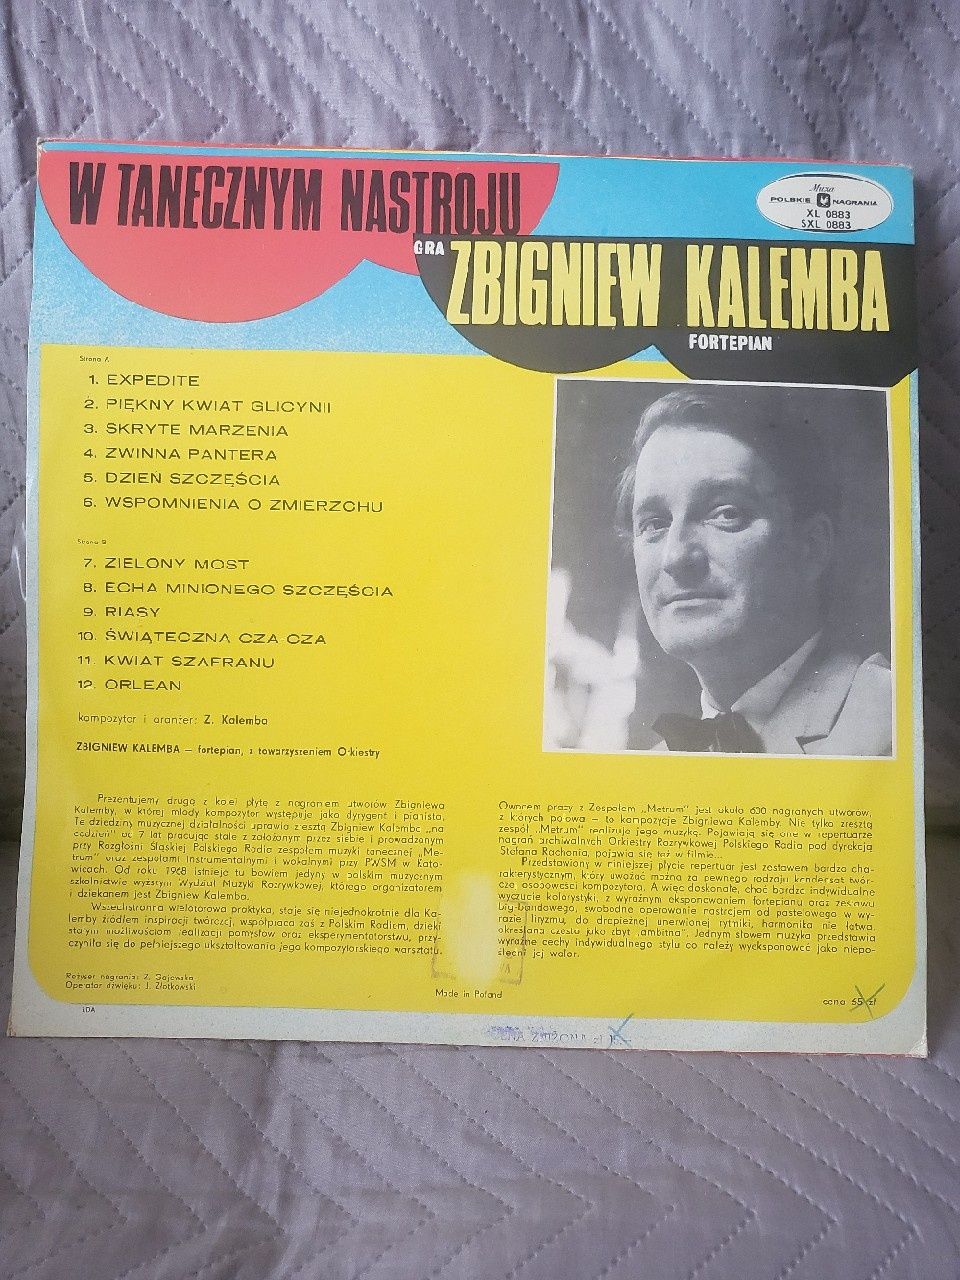 Nieodtwarzana, nieużywana płyta vinyl Z. KALEMBA  W tanecznym nastroju